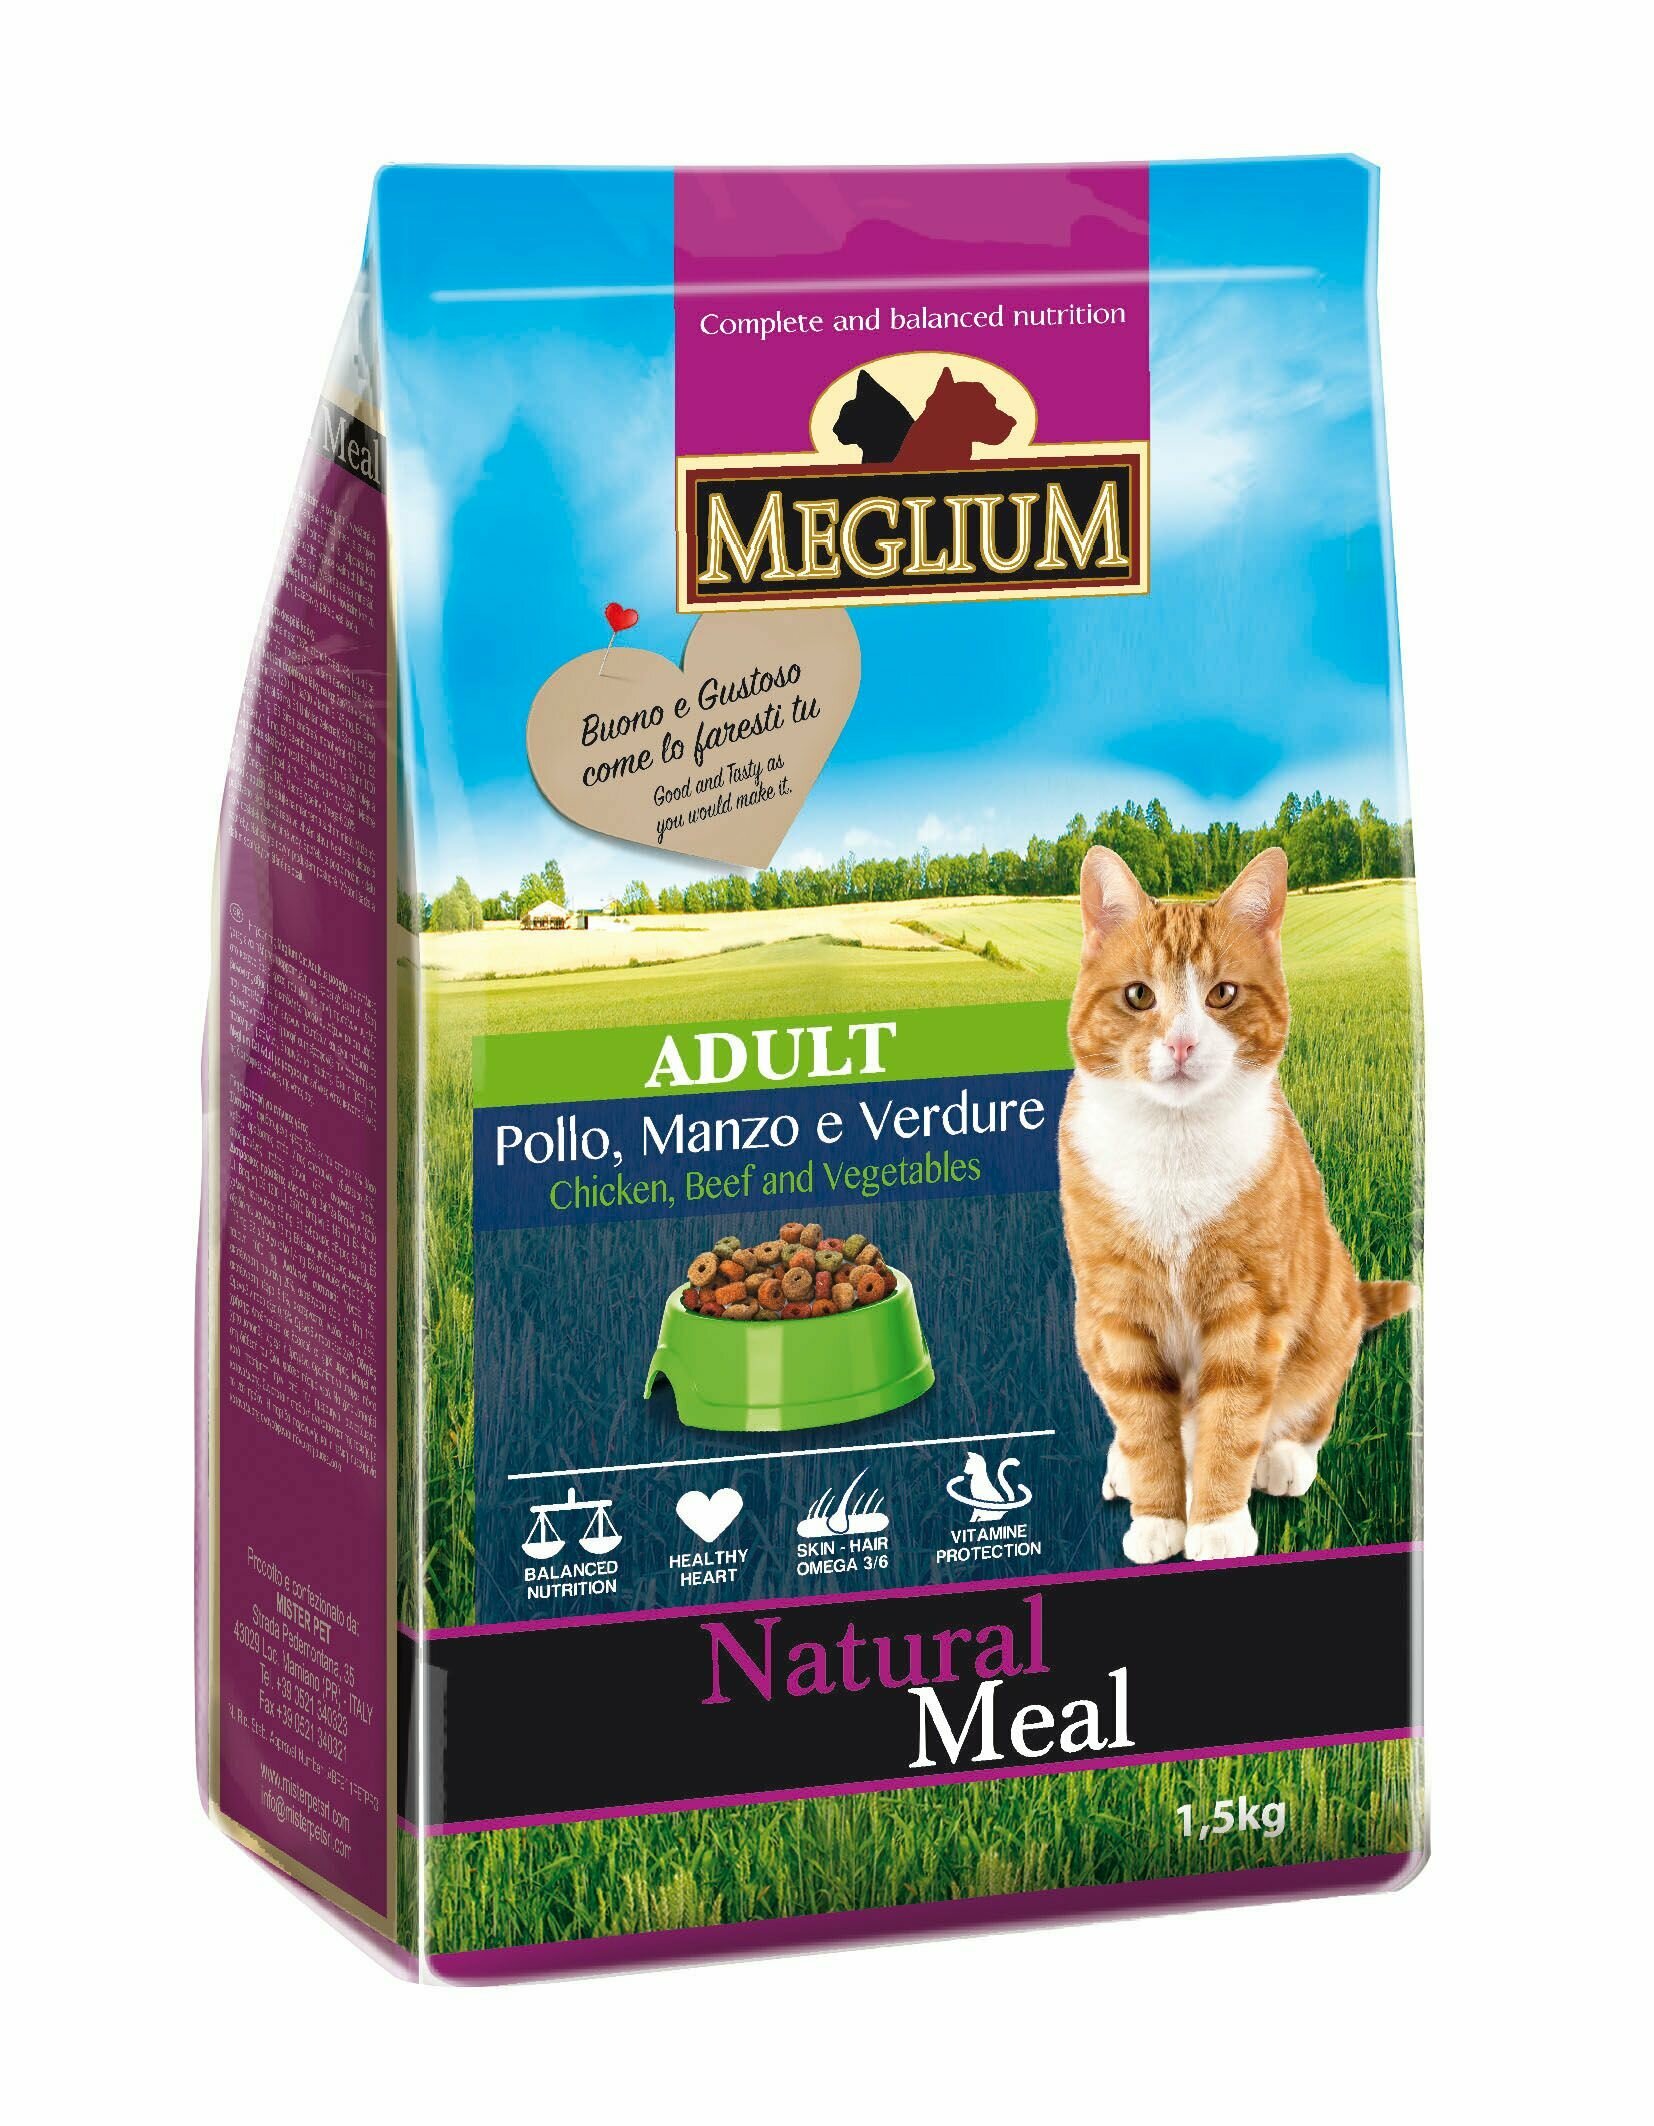 Meglium Adult сухой корм для кошек с говядиной, курицей и овощами + Бак в подарок!